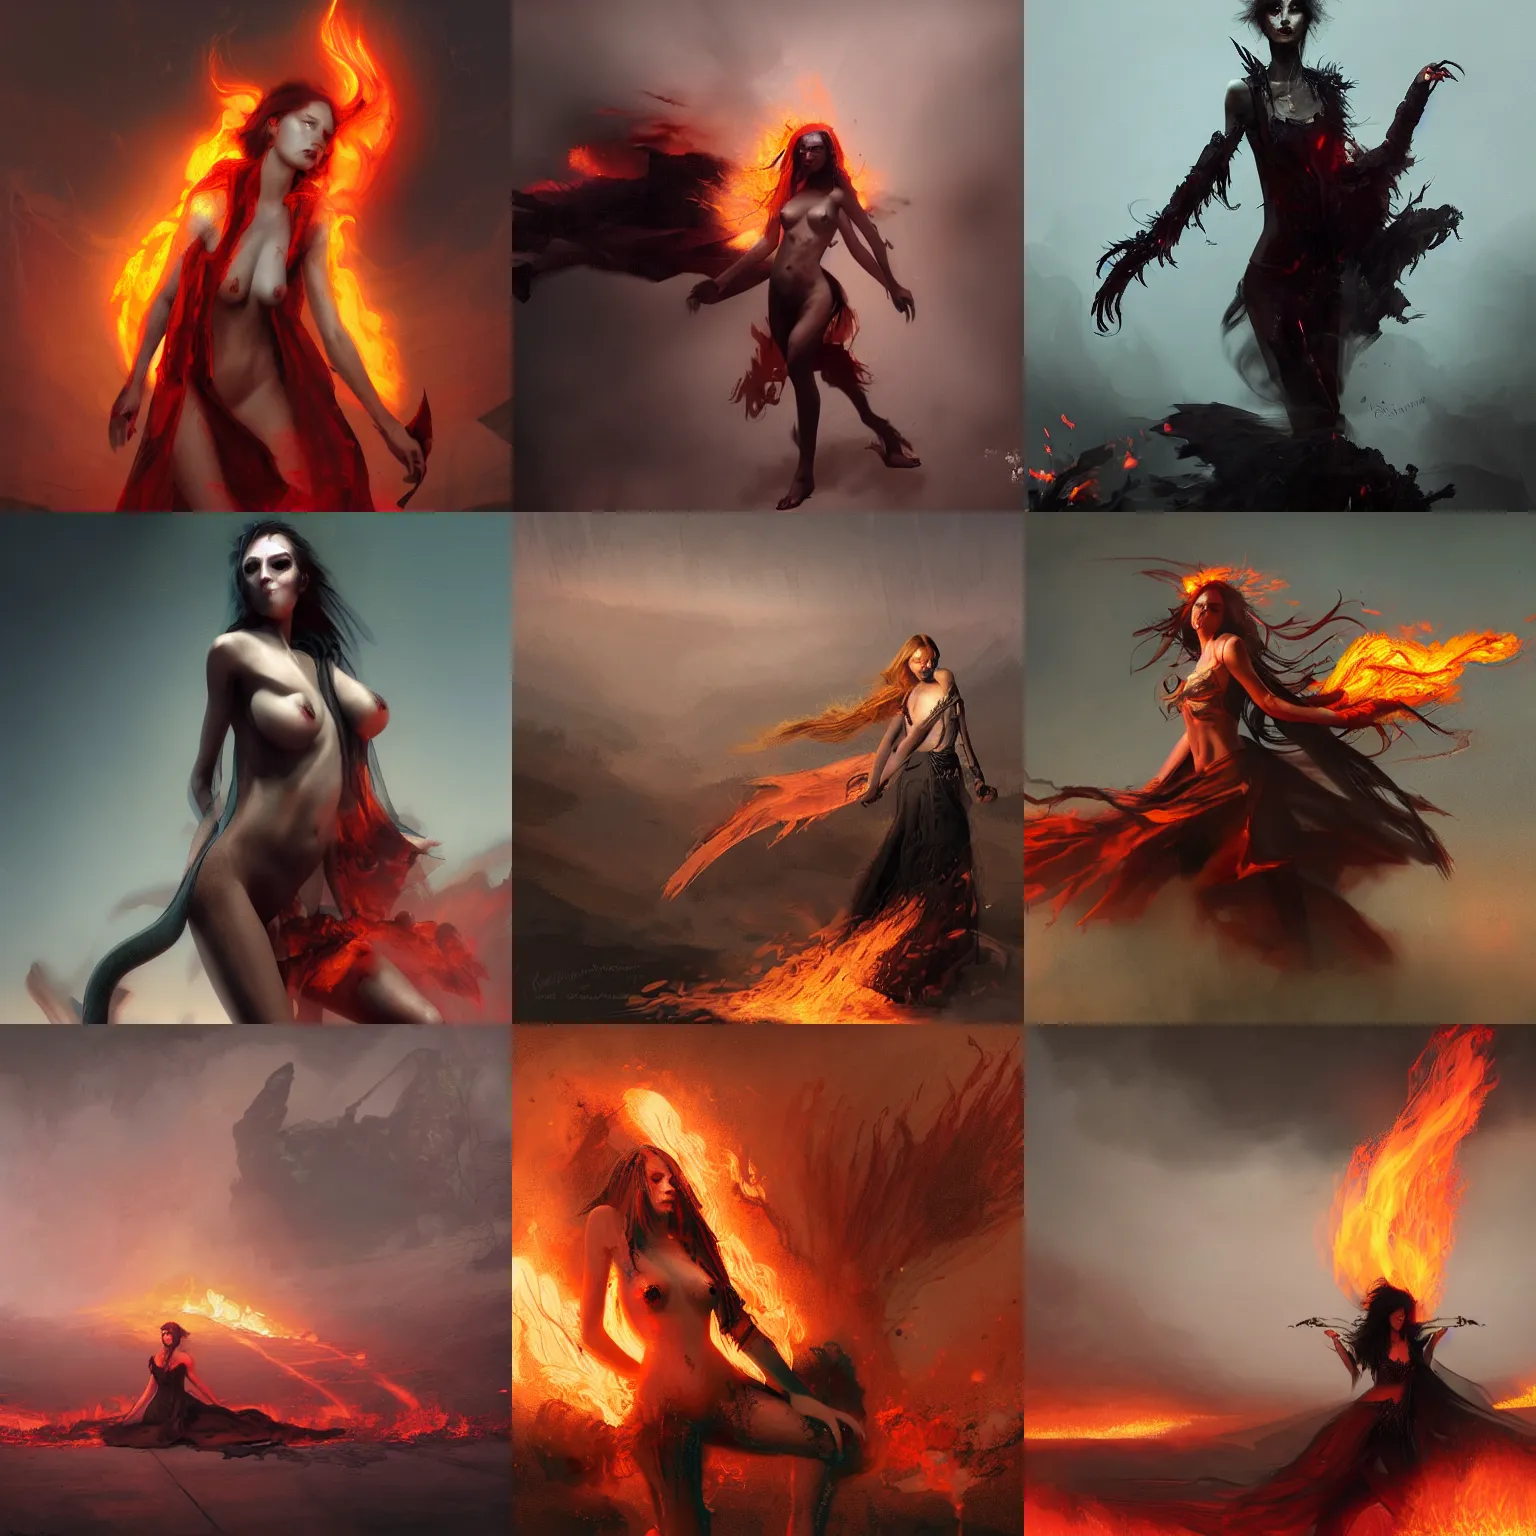 ArtStation - The Spirit of Fire